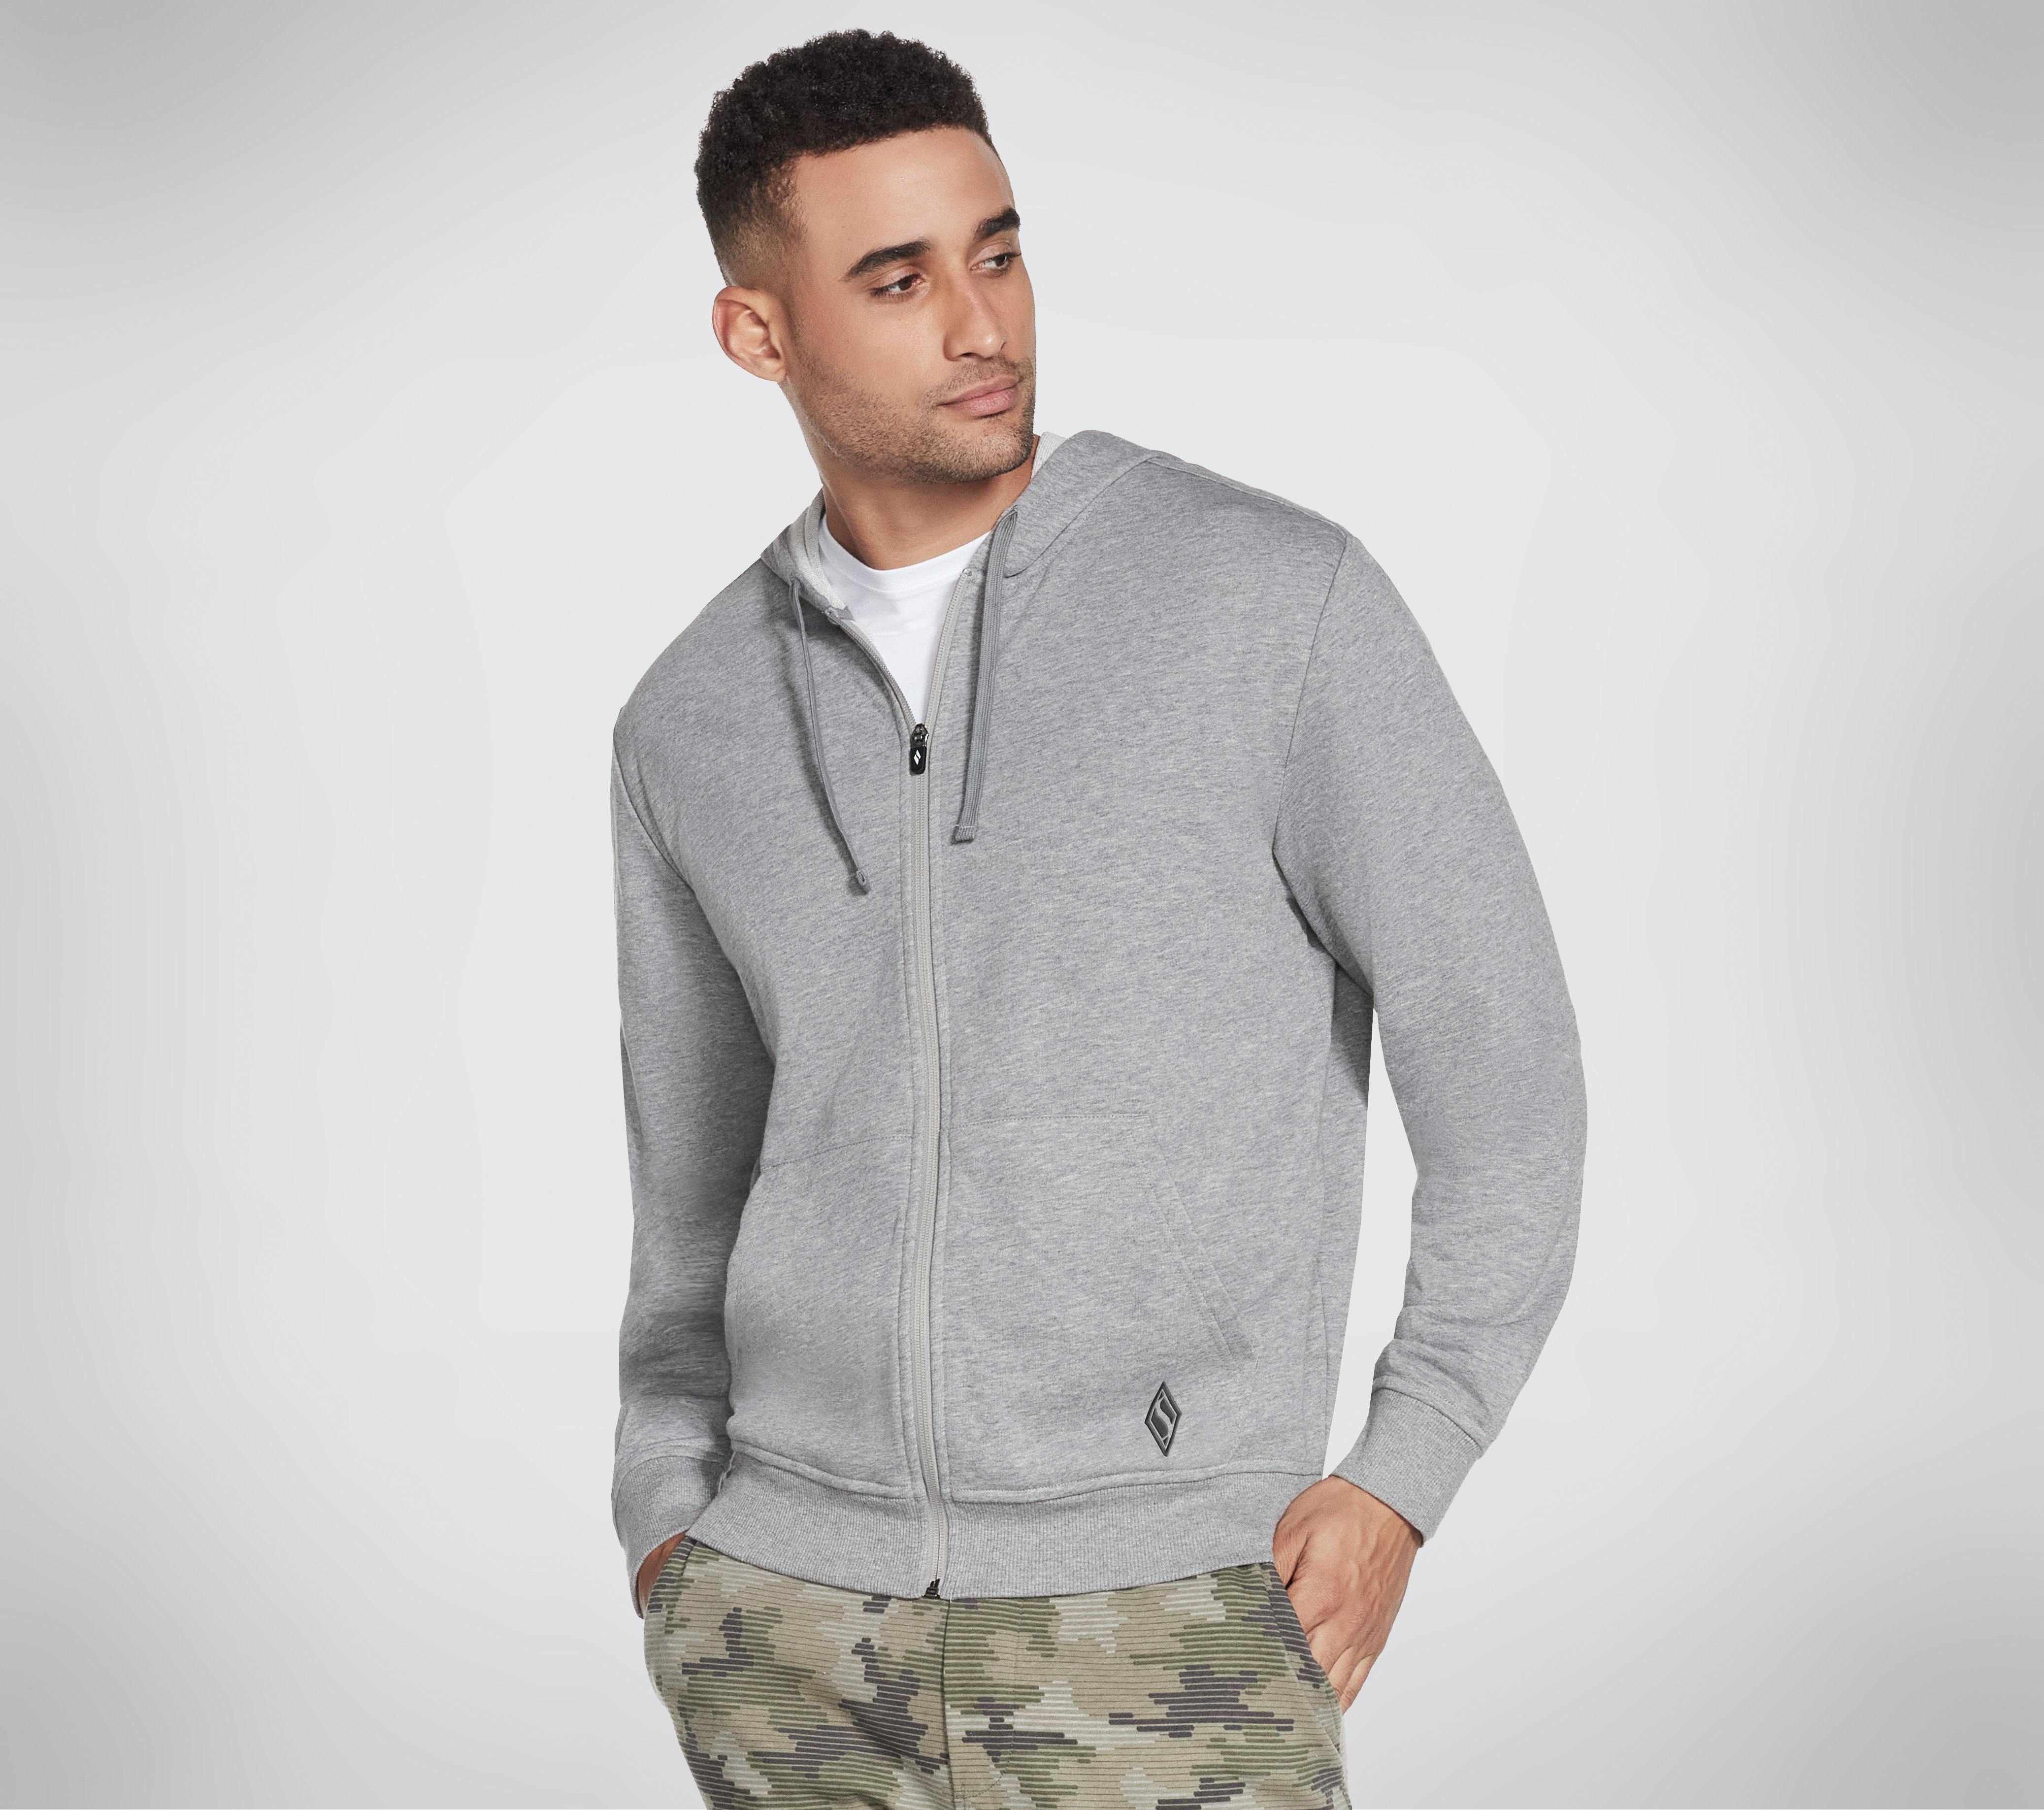 Foto de producto: Men's knit full zip hoodie